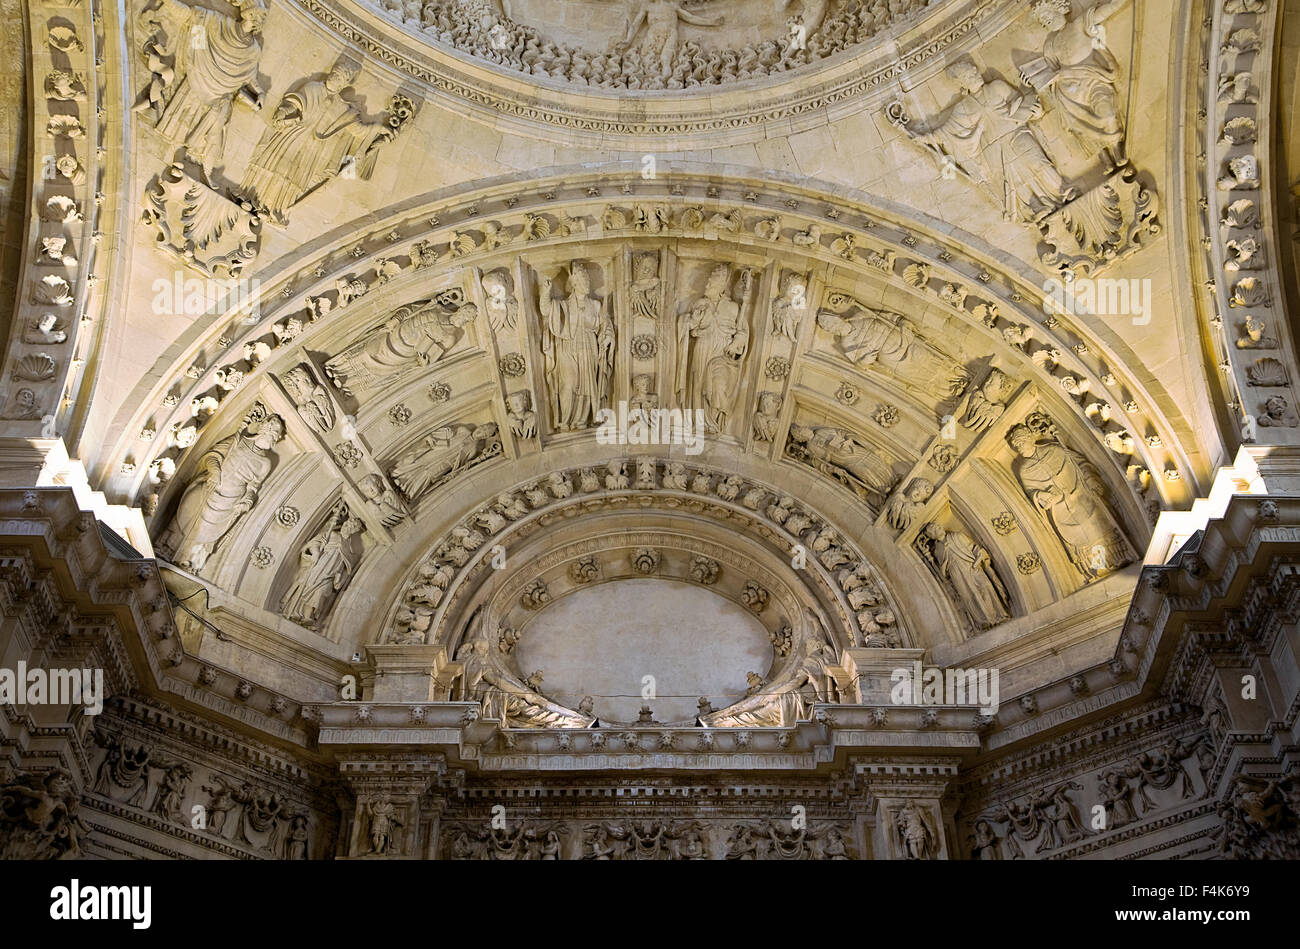 El techo de la catedral de Sevilla, España, vista desde abajo Foto de stock